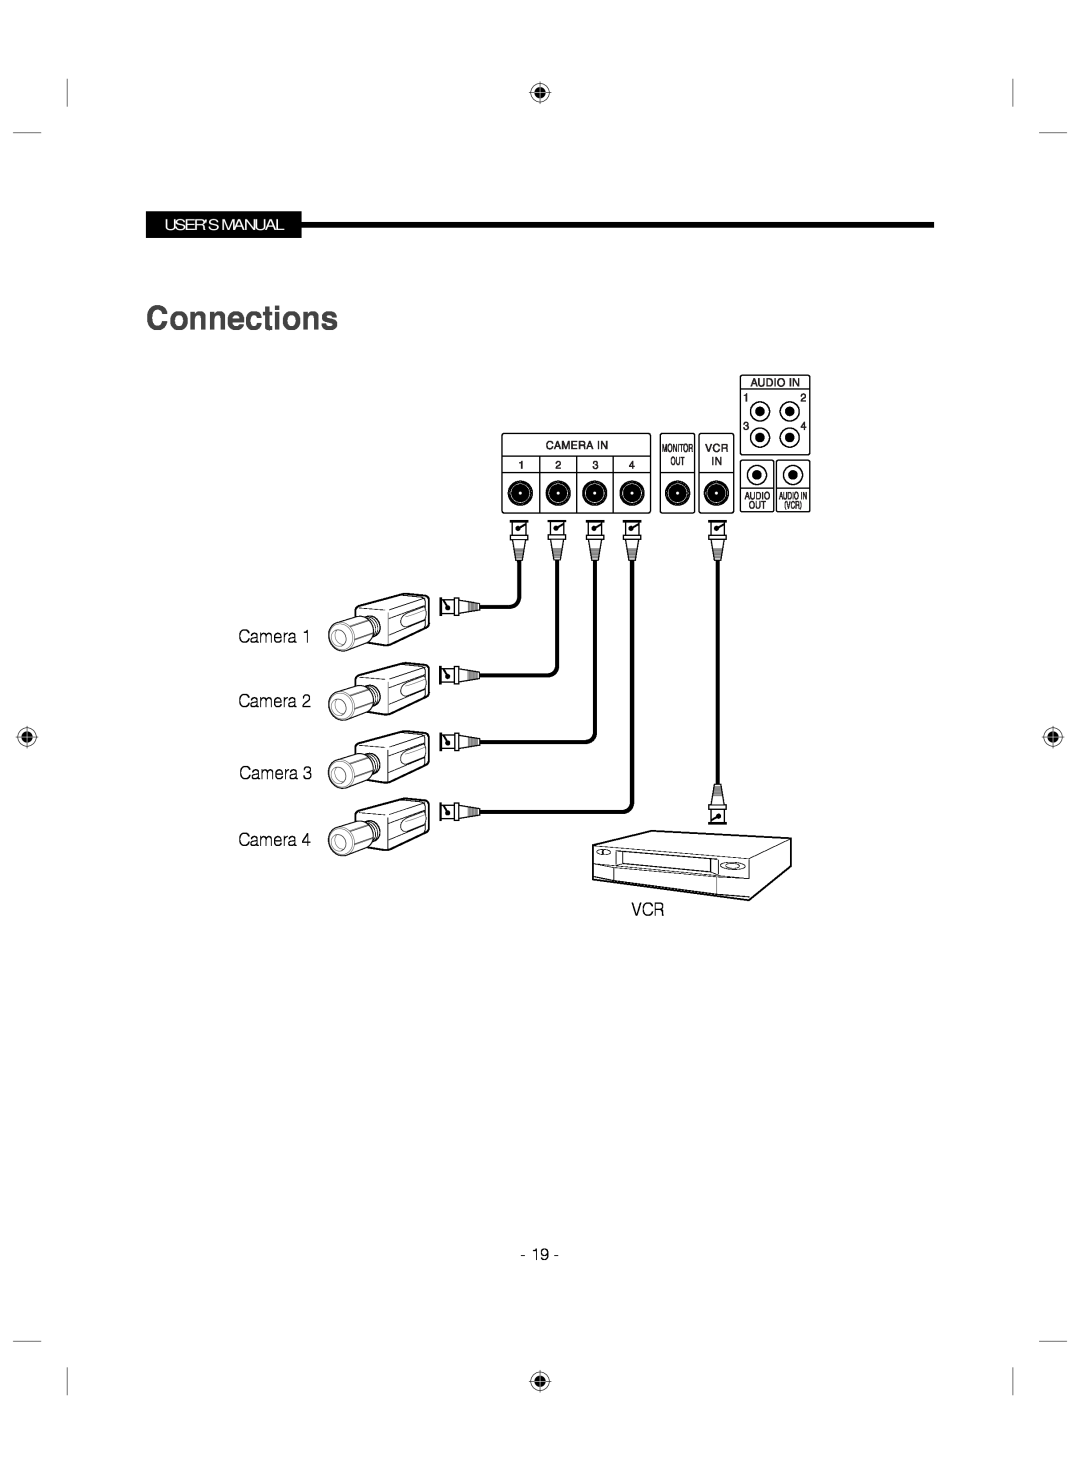 Samsung SMC-145 manual Connections, Camera Camera Camera Camera VCR, Users Manual 